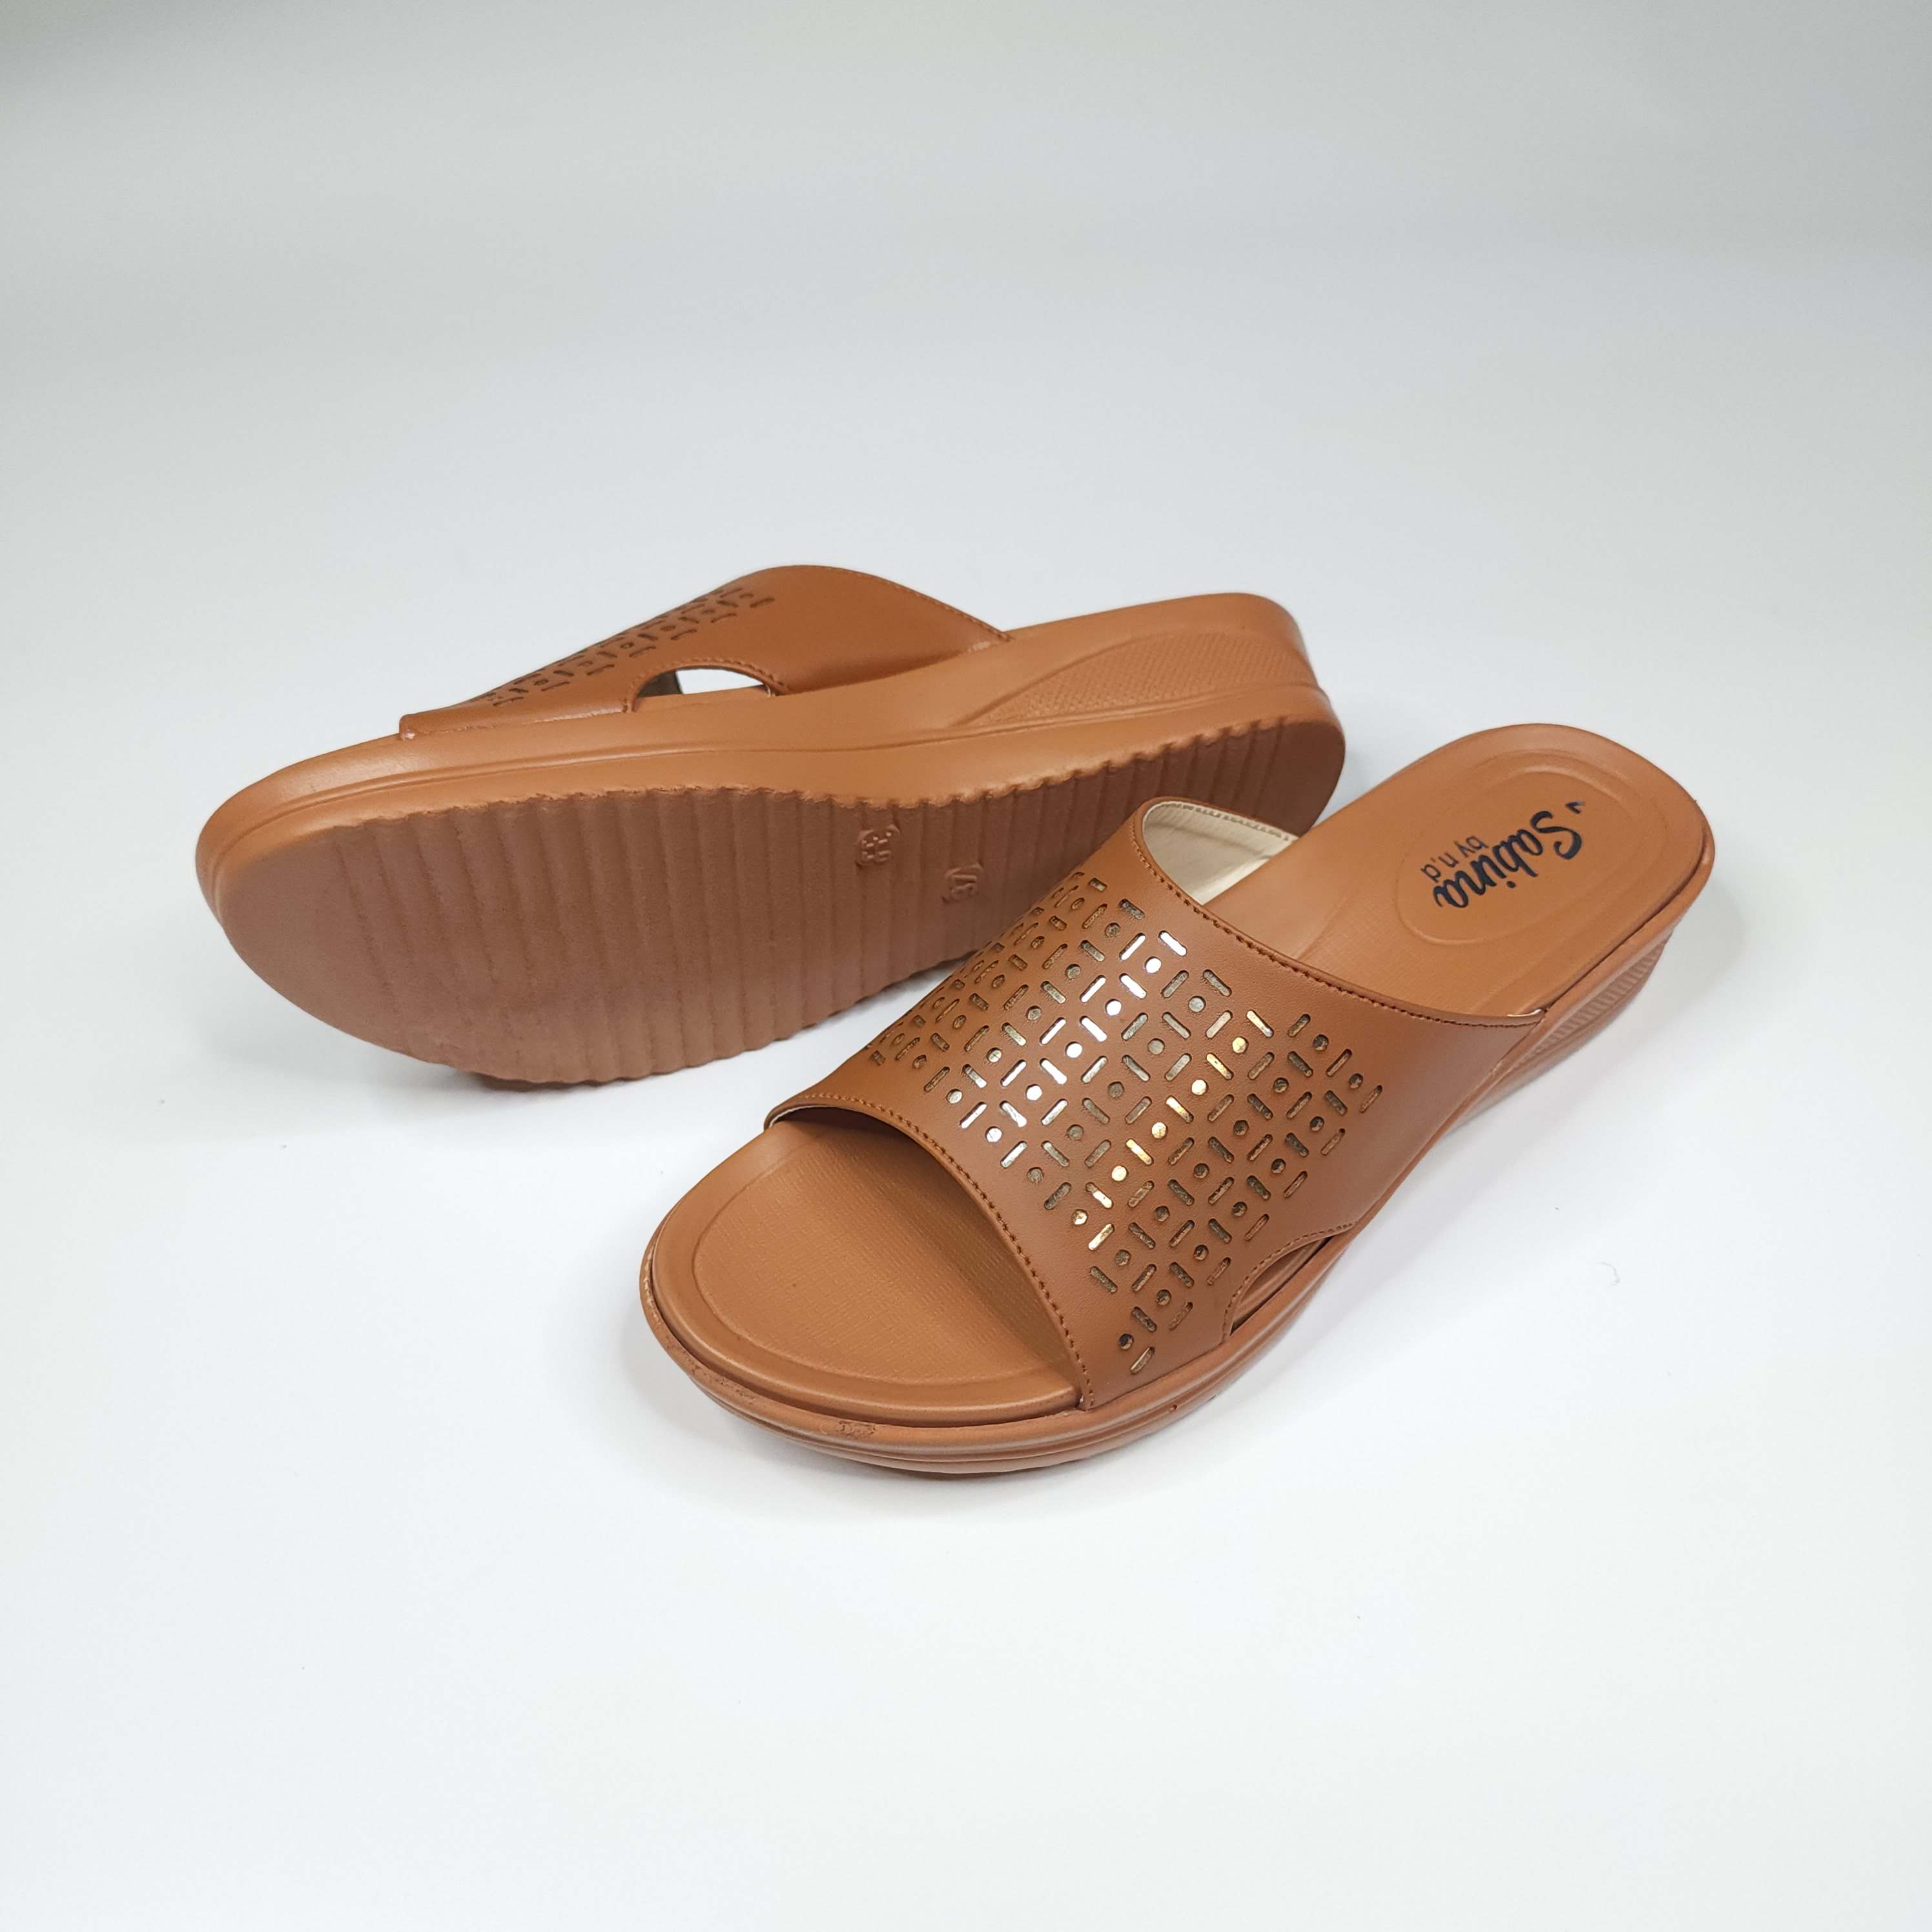 Mustard Slippers in Short Wedge - Maha fashions -  Women Footwear